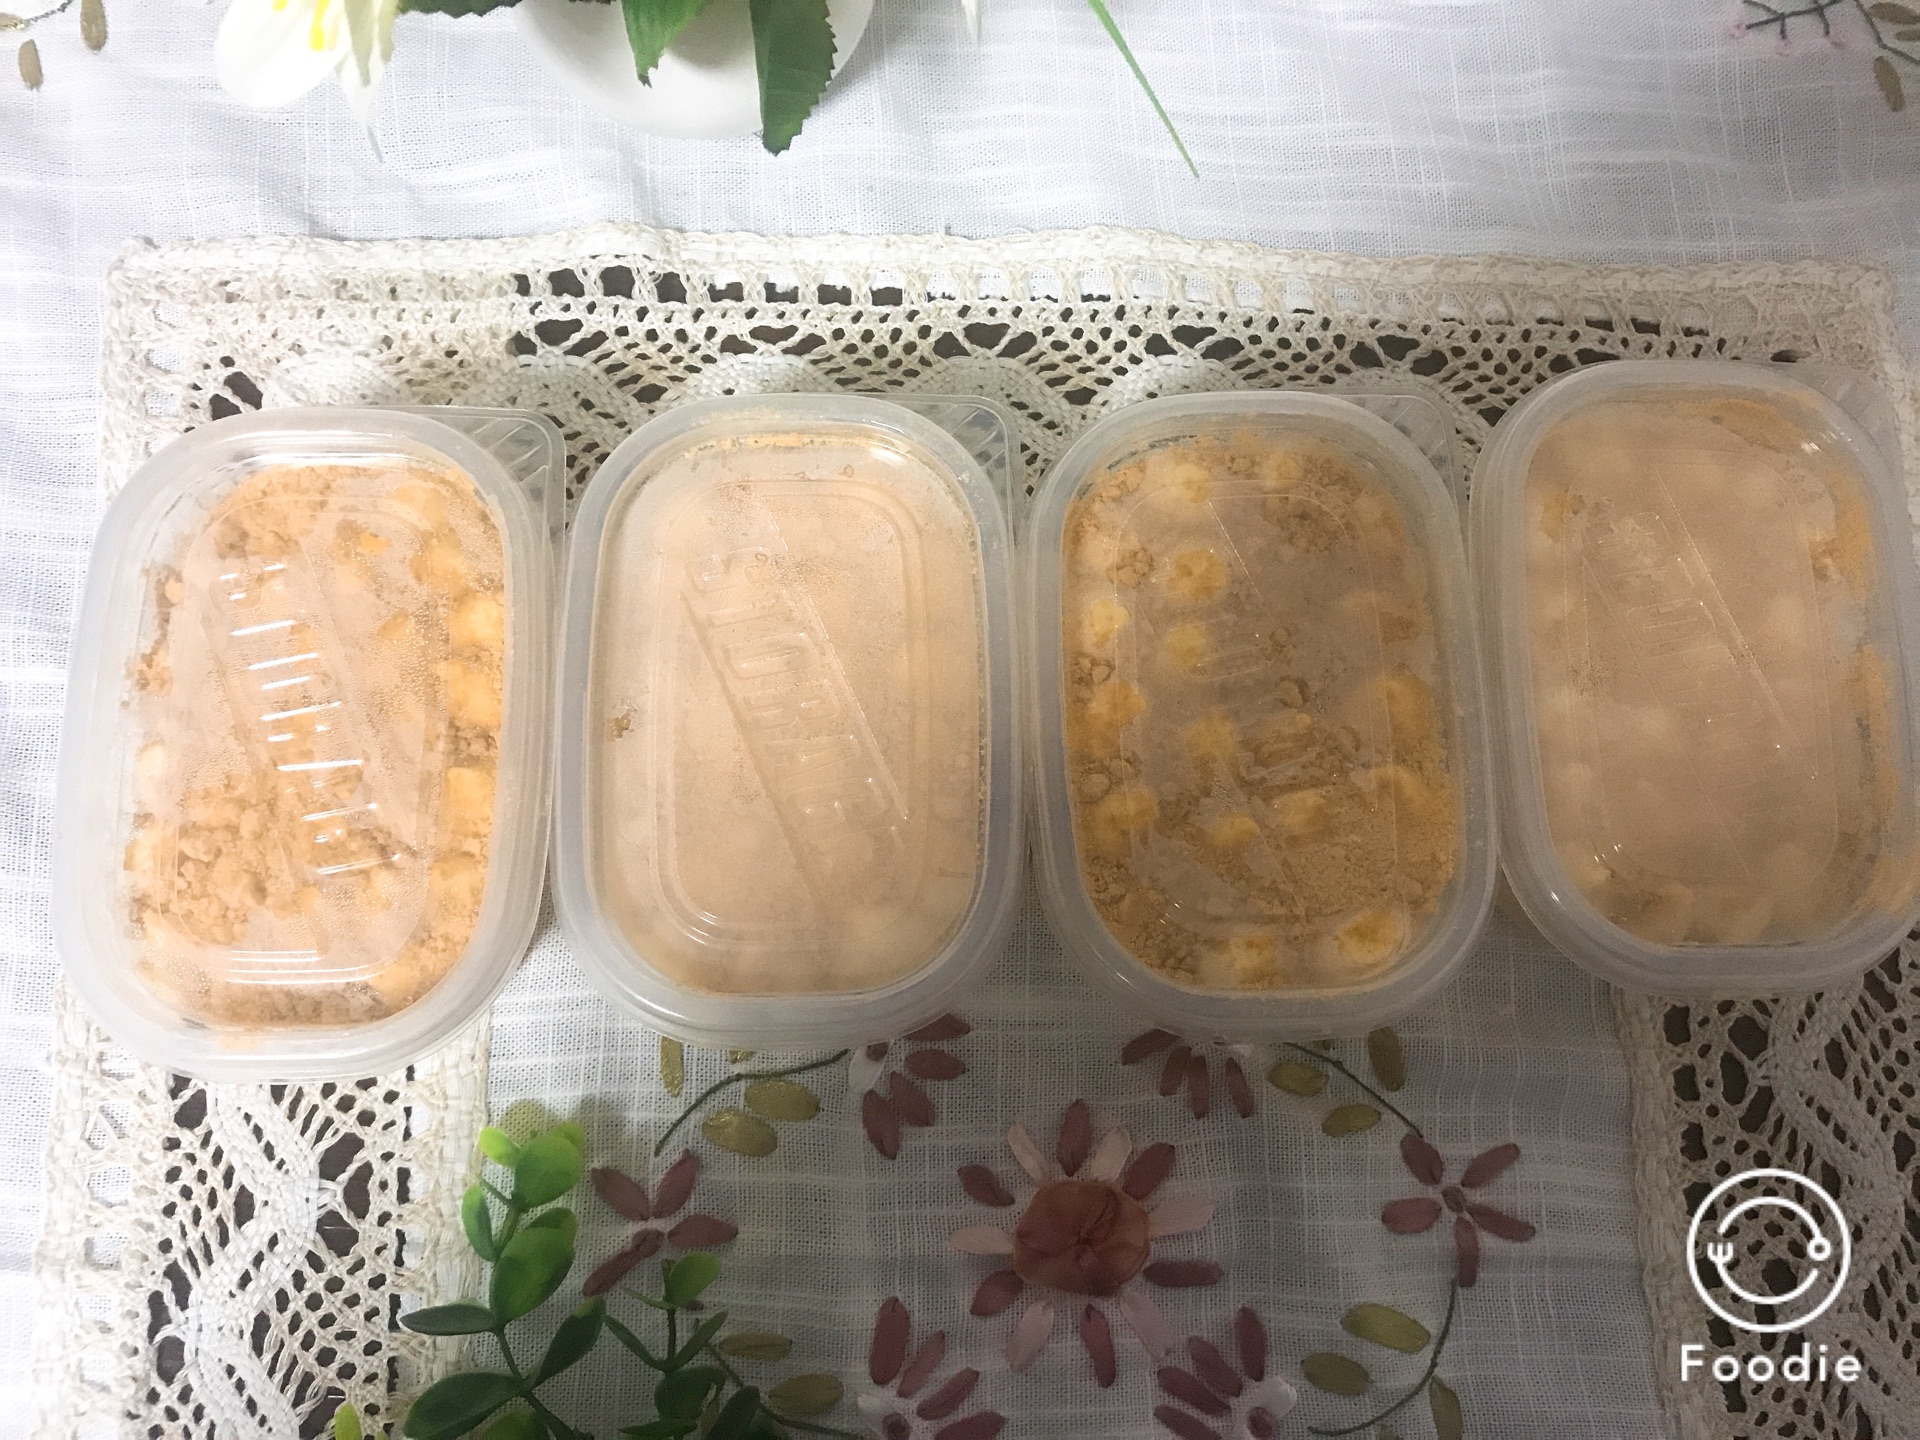 日式豆乳盒子怎么做_日式豆乳盒子的做法_honey啊清清_豆果美食